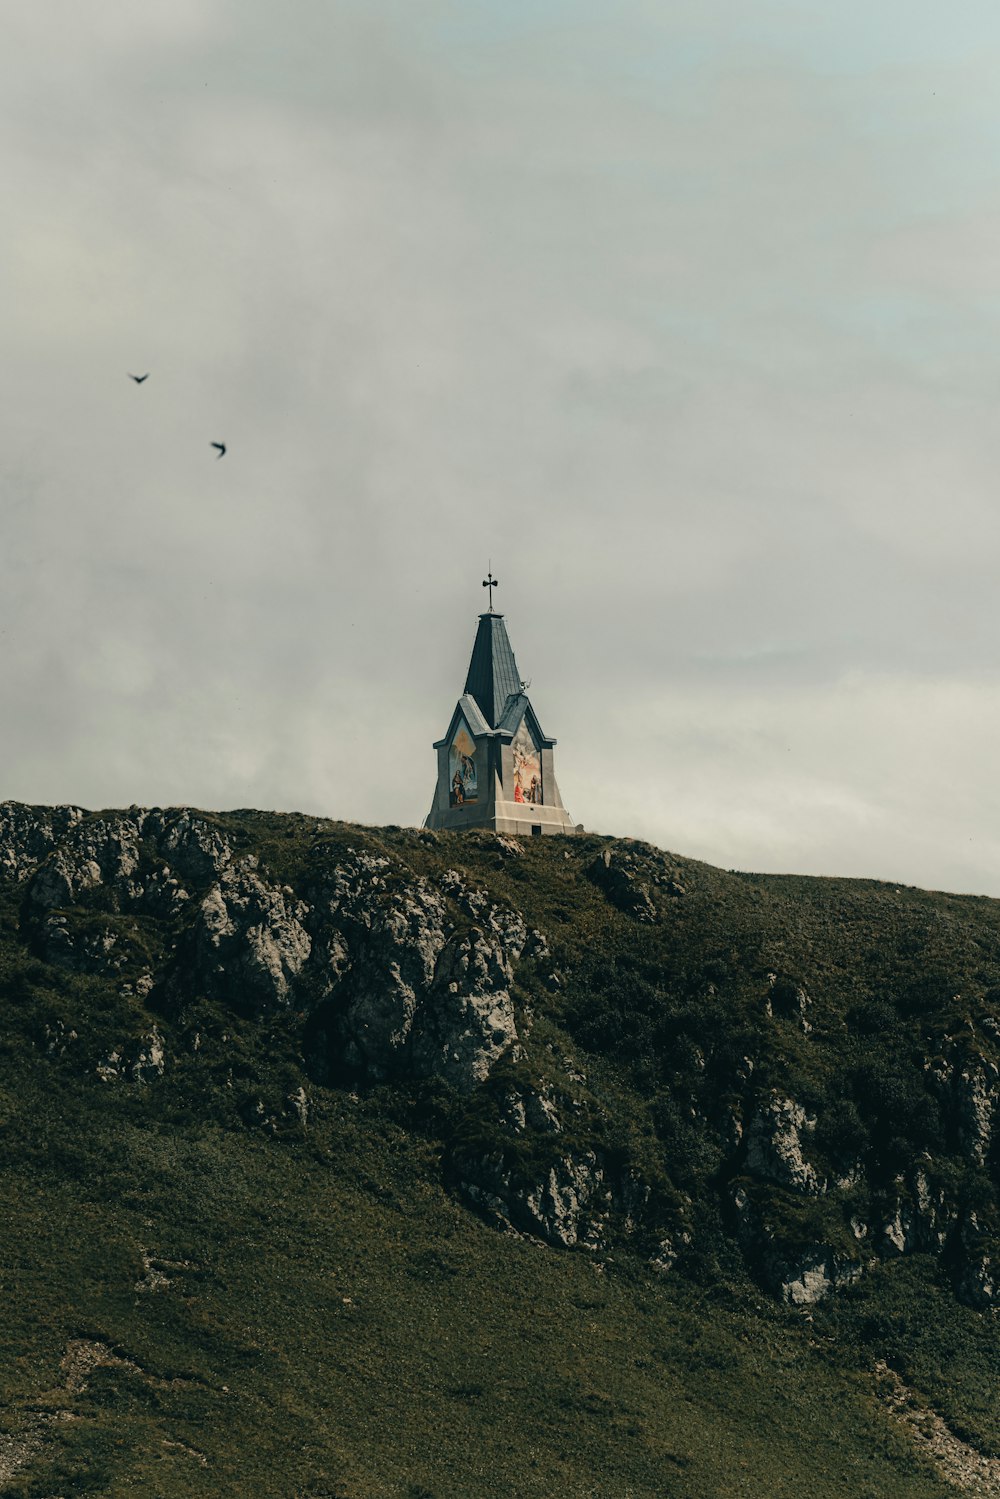 Eine Kirche auf einem Hügel mit einem vorbeifliegenden Vogel